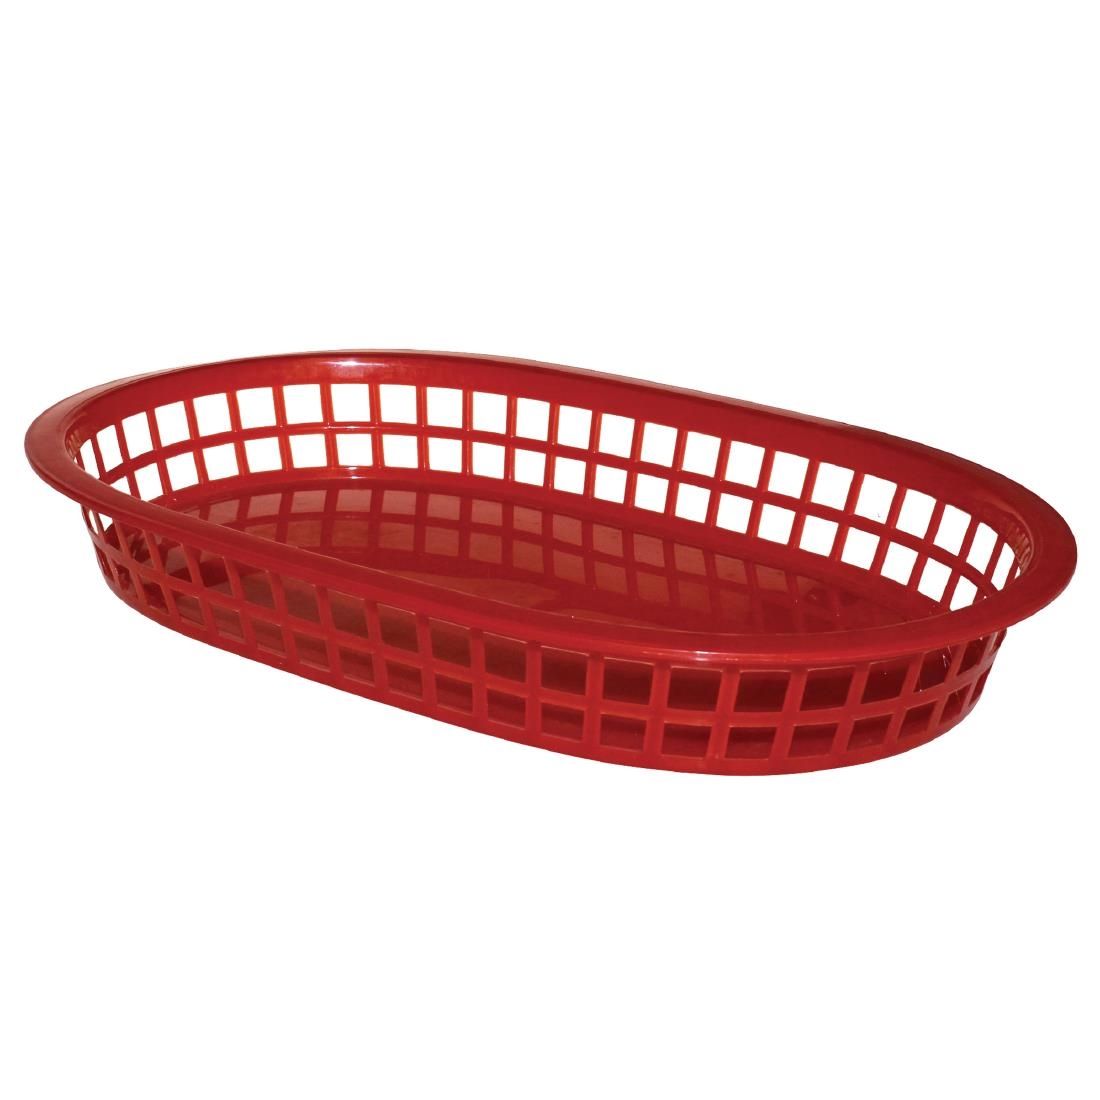 GH967 Oval Polypropylene Food Basket (Pack of 6)